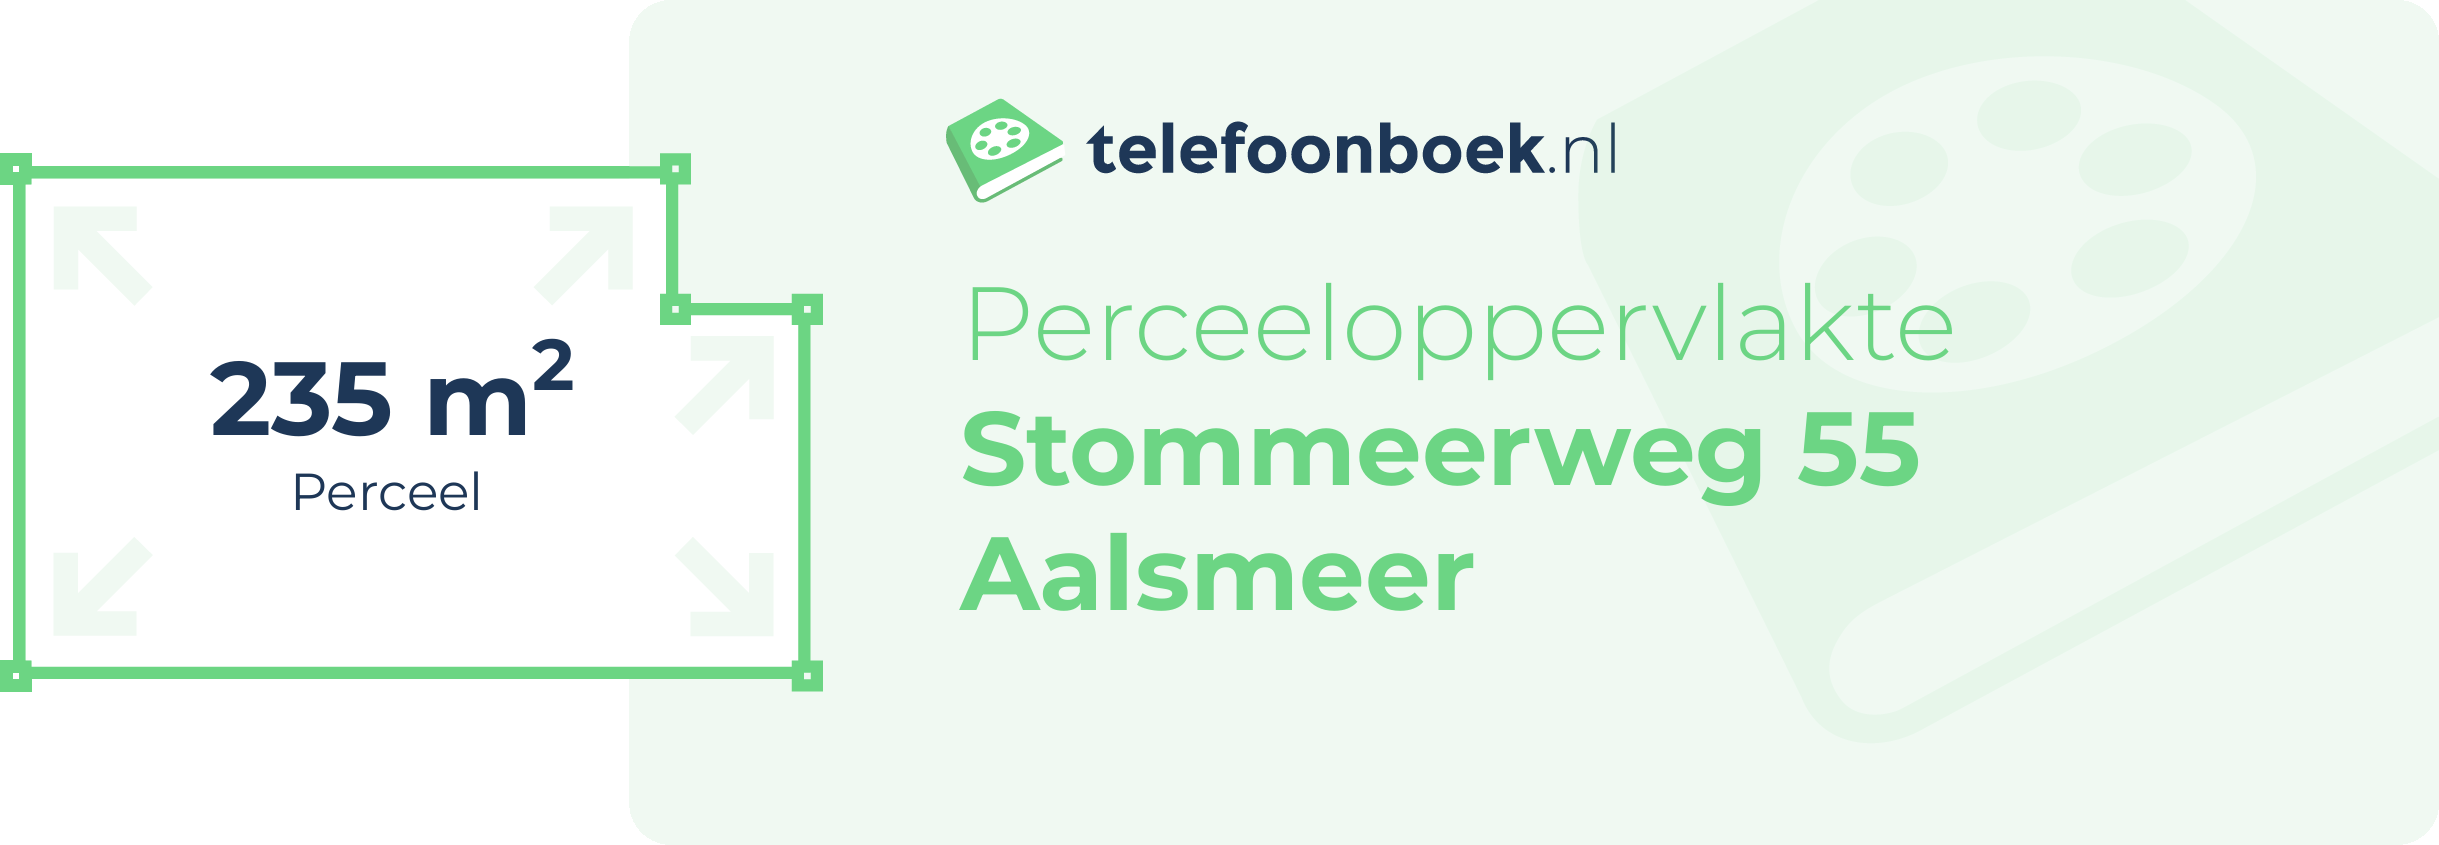 Perceeloppervlakte Stommeerweg 55 Aalsmeer